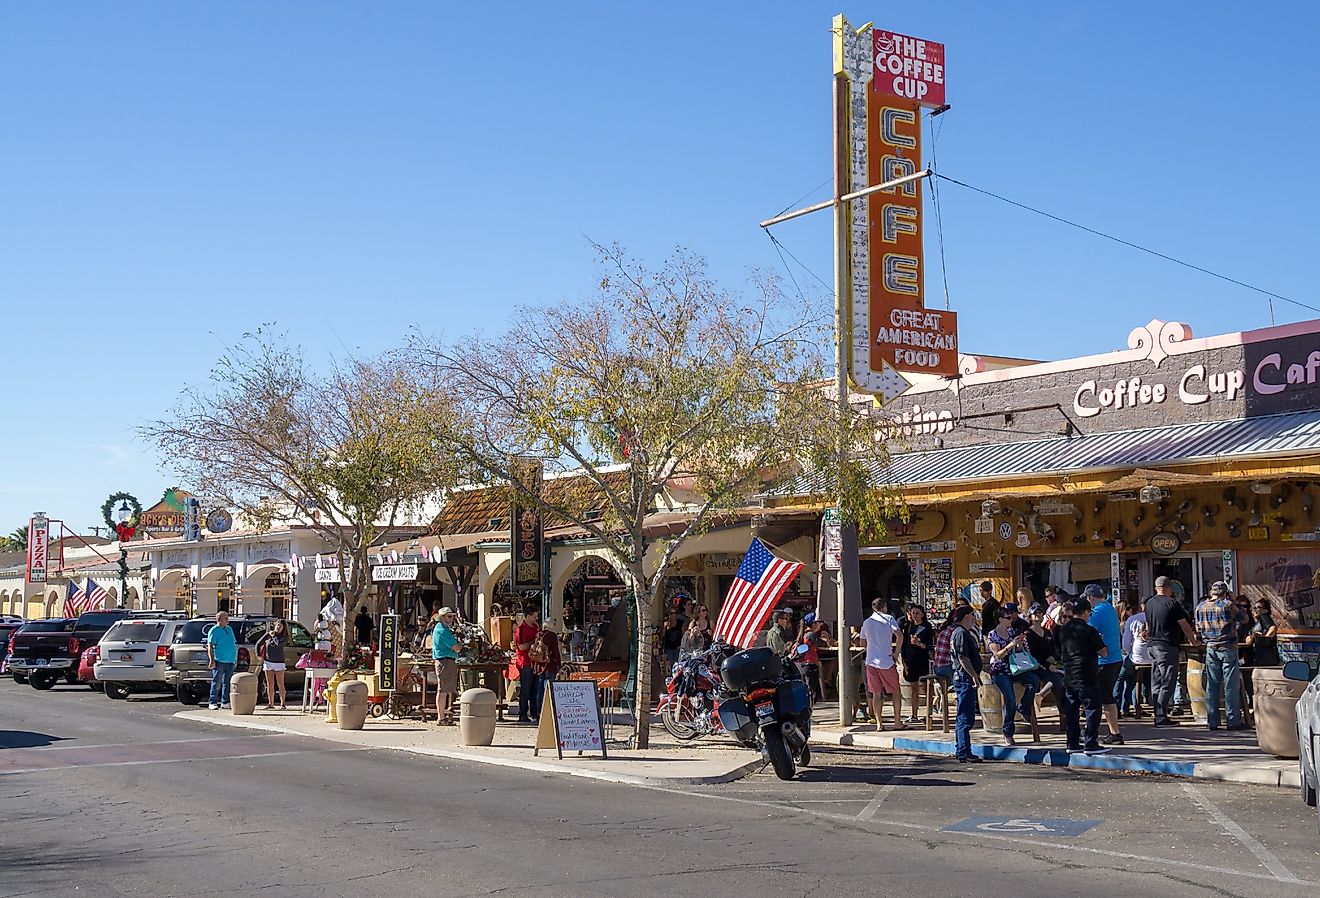 Cafe and restaurant in Boulder City, Nevada. Image credit Laurens Hoddenbagh via Shutterstock